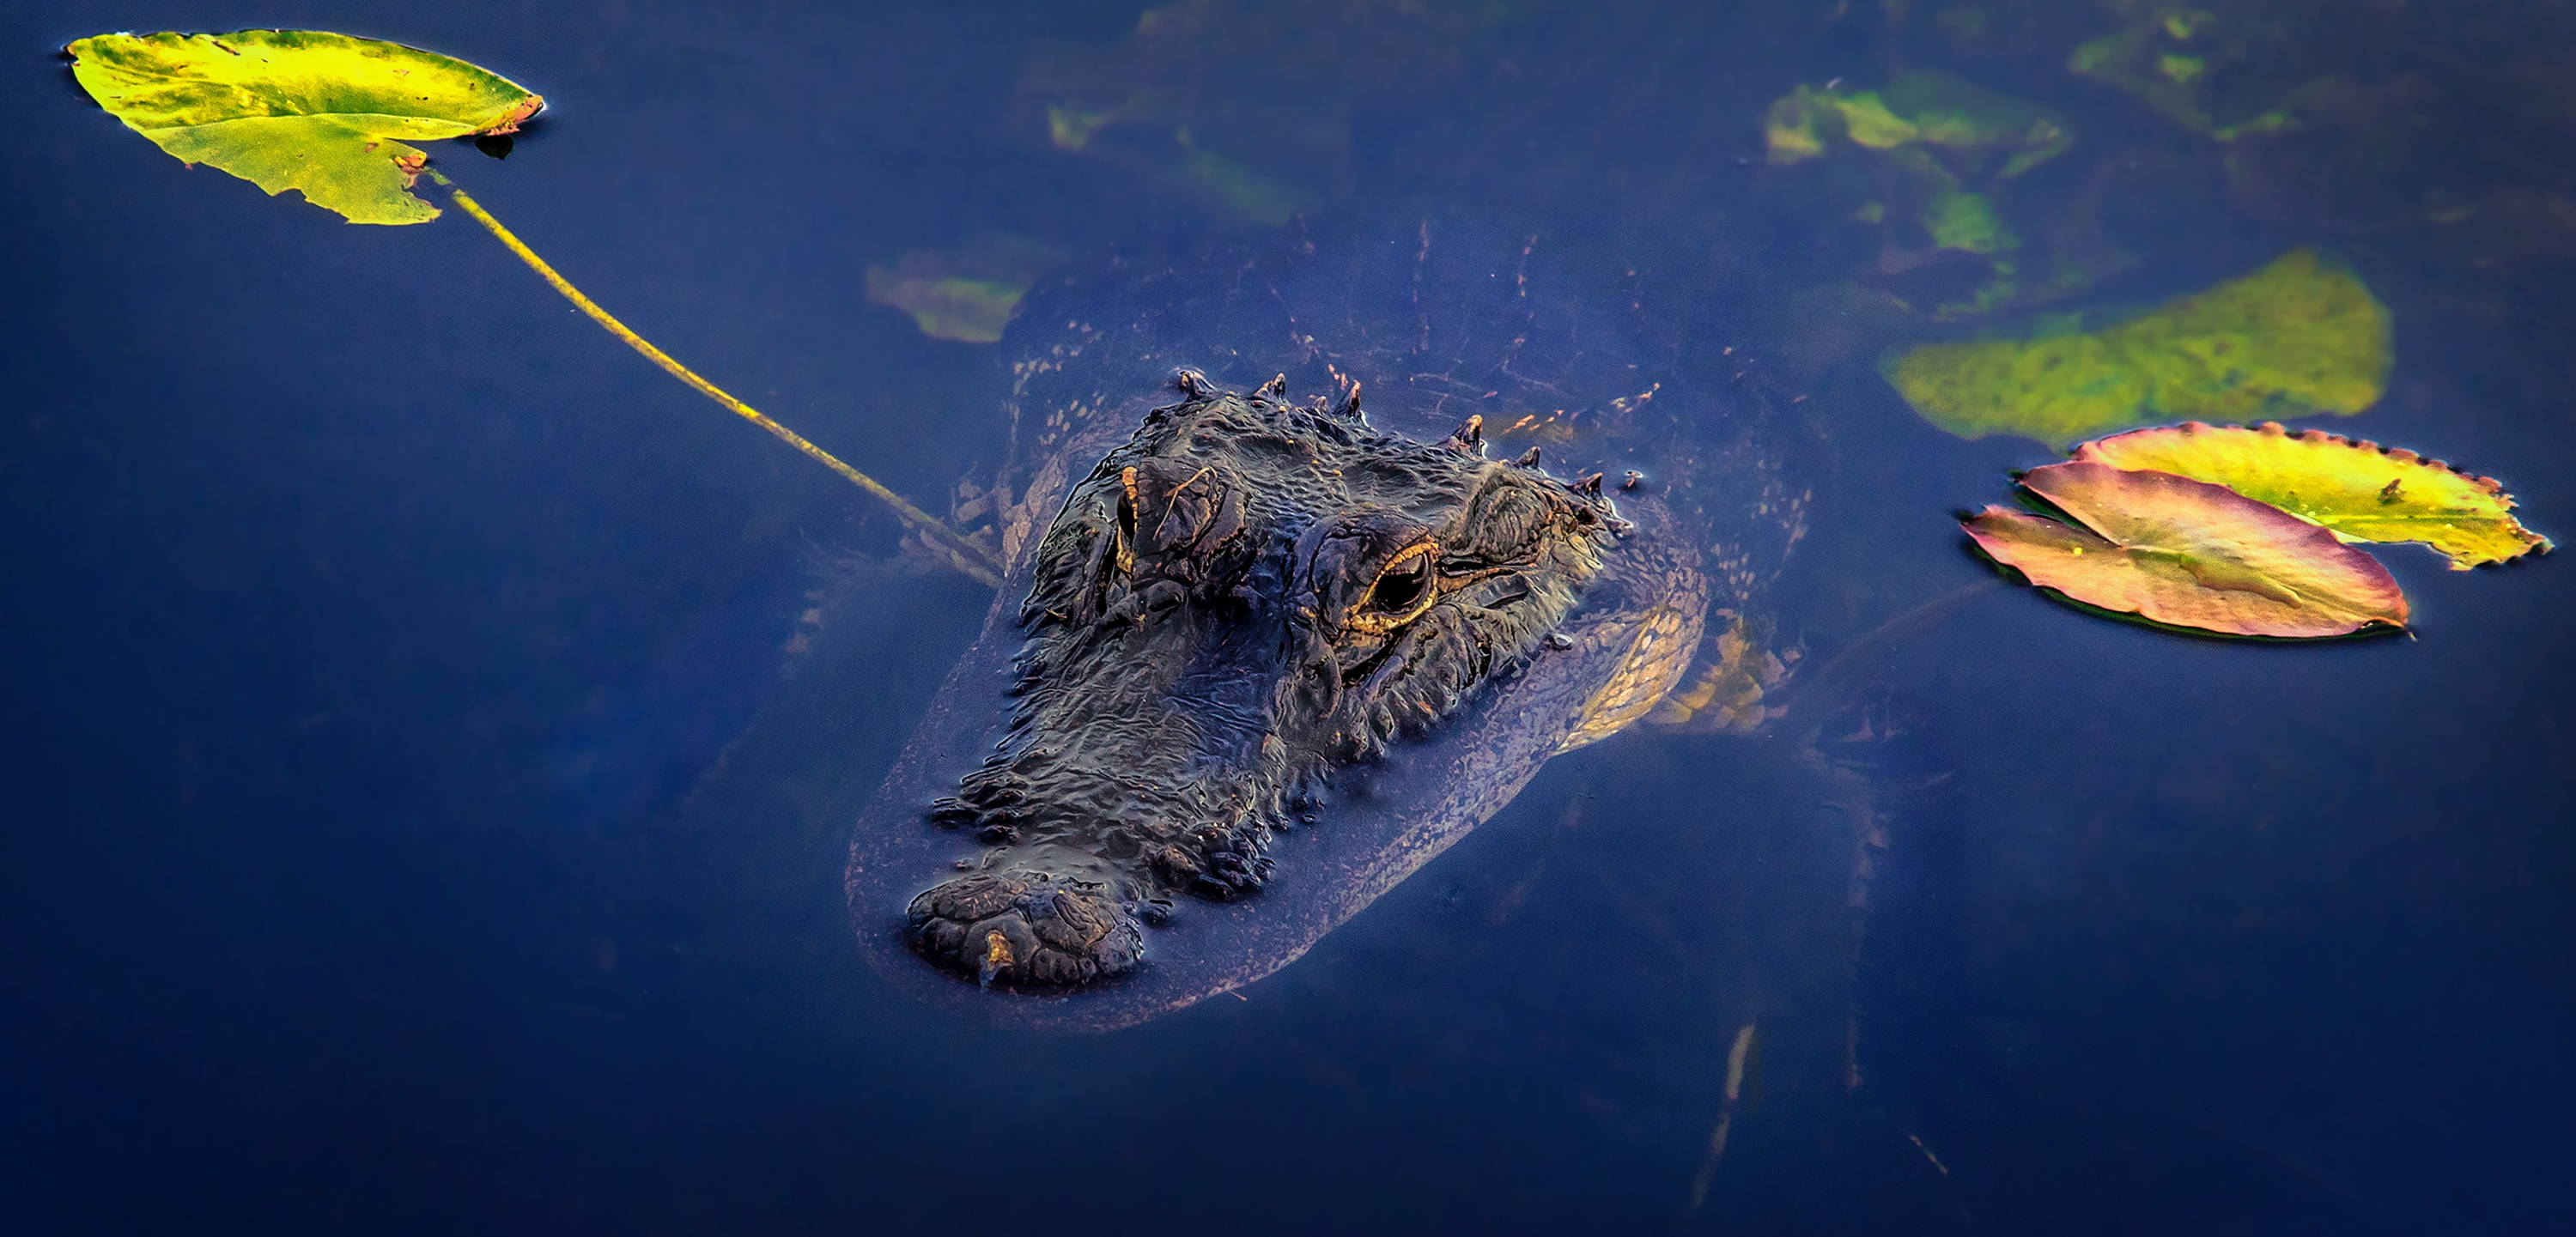 Up close shot of an alligator. 